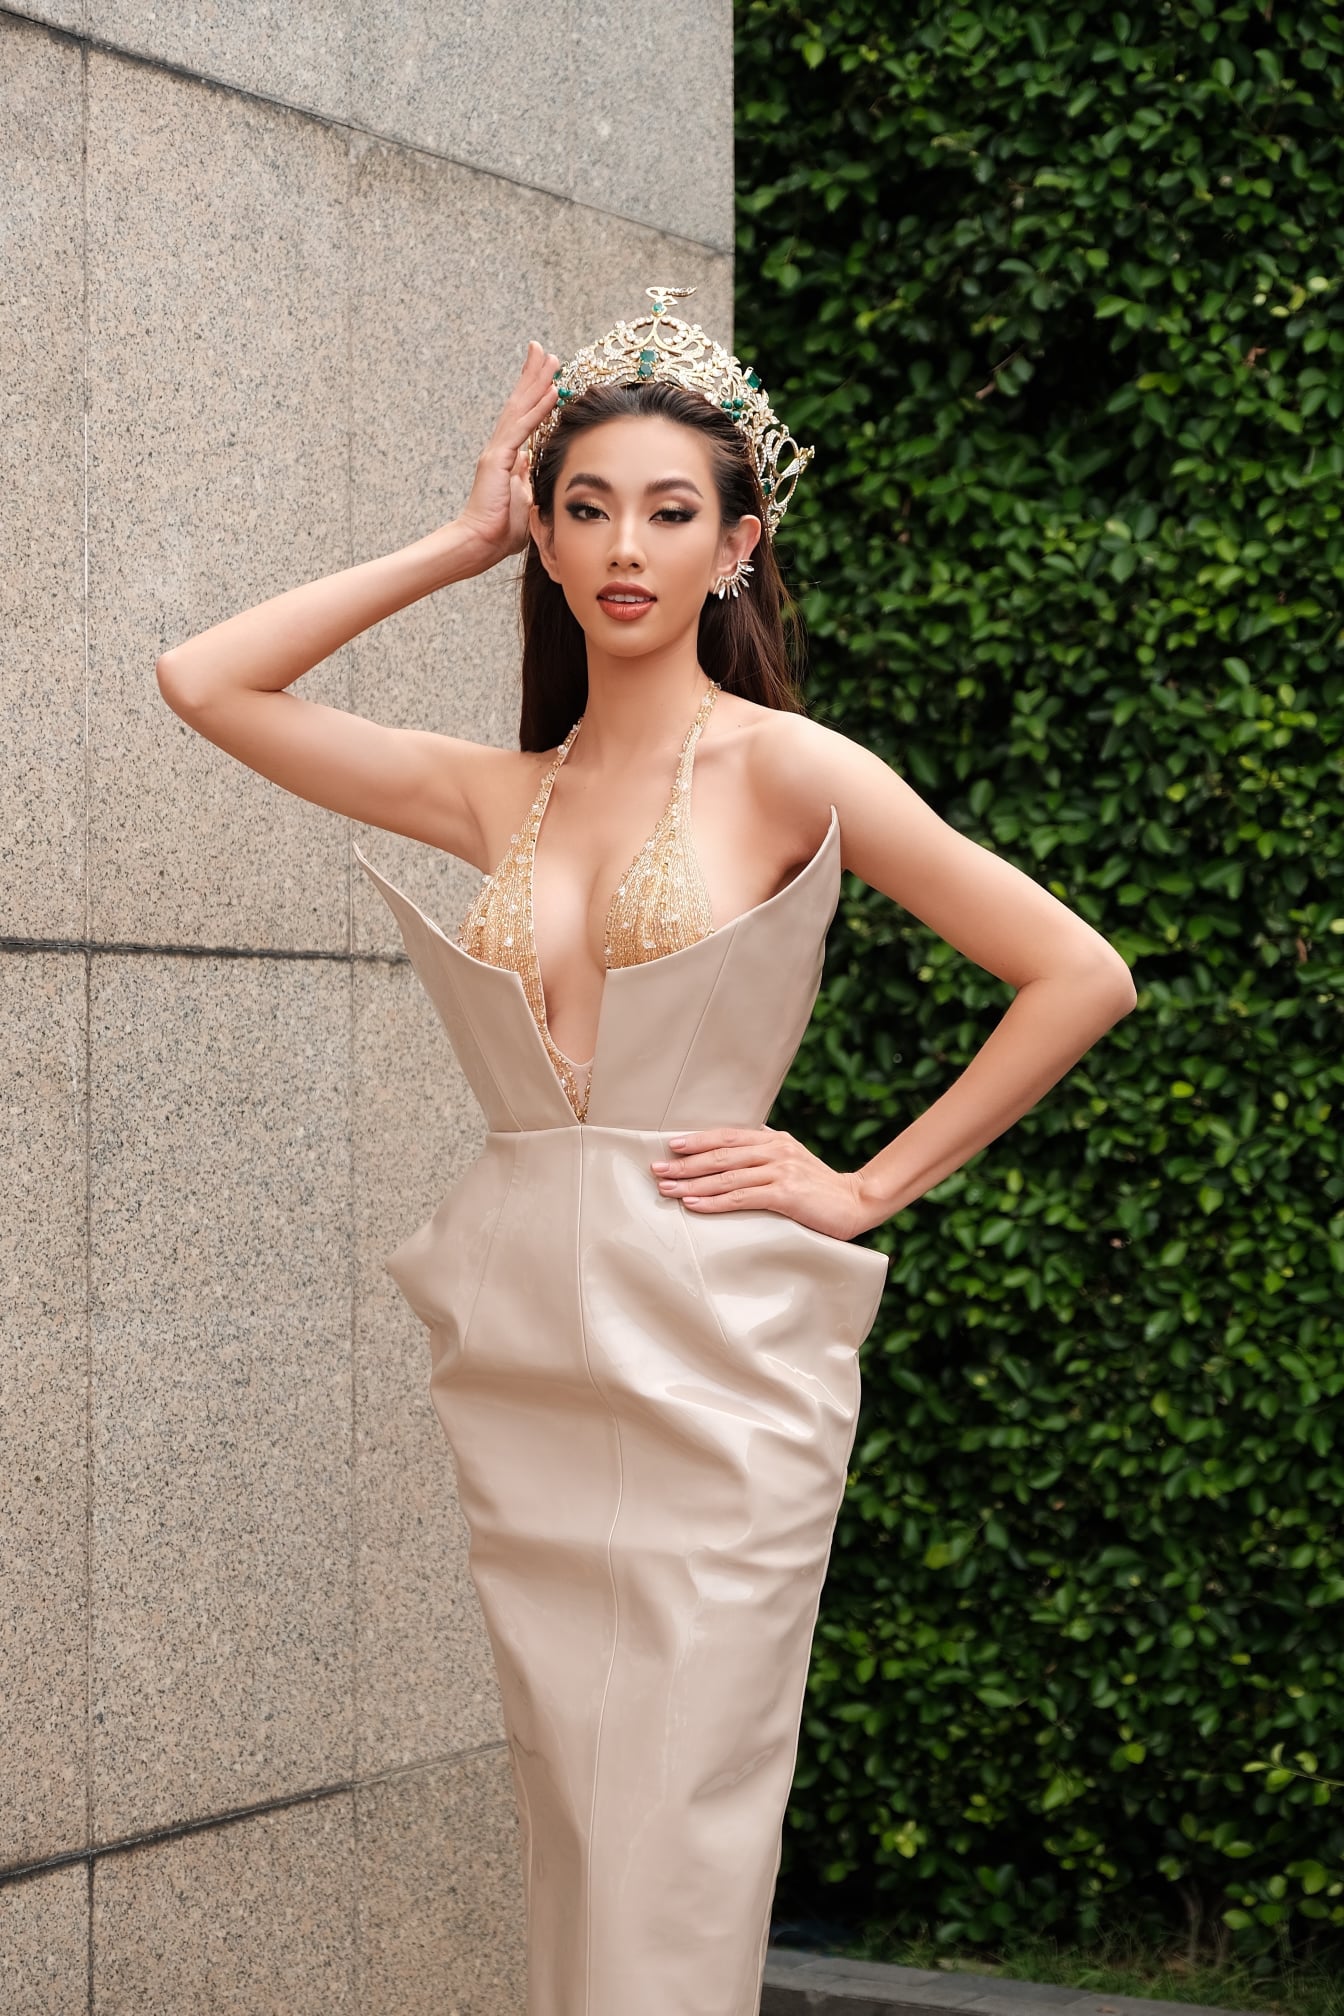 Hoa hậu Thùy Tiên tiếp tục 'chặt chém' với layout sexy hút hồn trong lịch trình tiếp theo tại Thái Lan. Người đẹp tích cực tham gia show truyền hình tại Thái, tự tin giao tiếp tiếng Anh, tiếng Thái khiến khán giả không khỏi ngưỡng mộ.